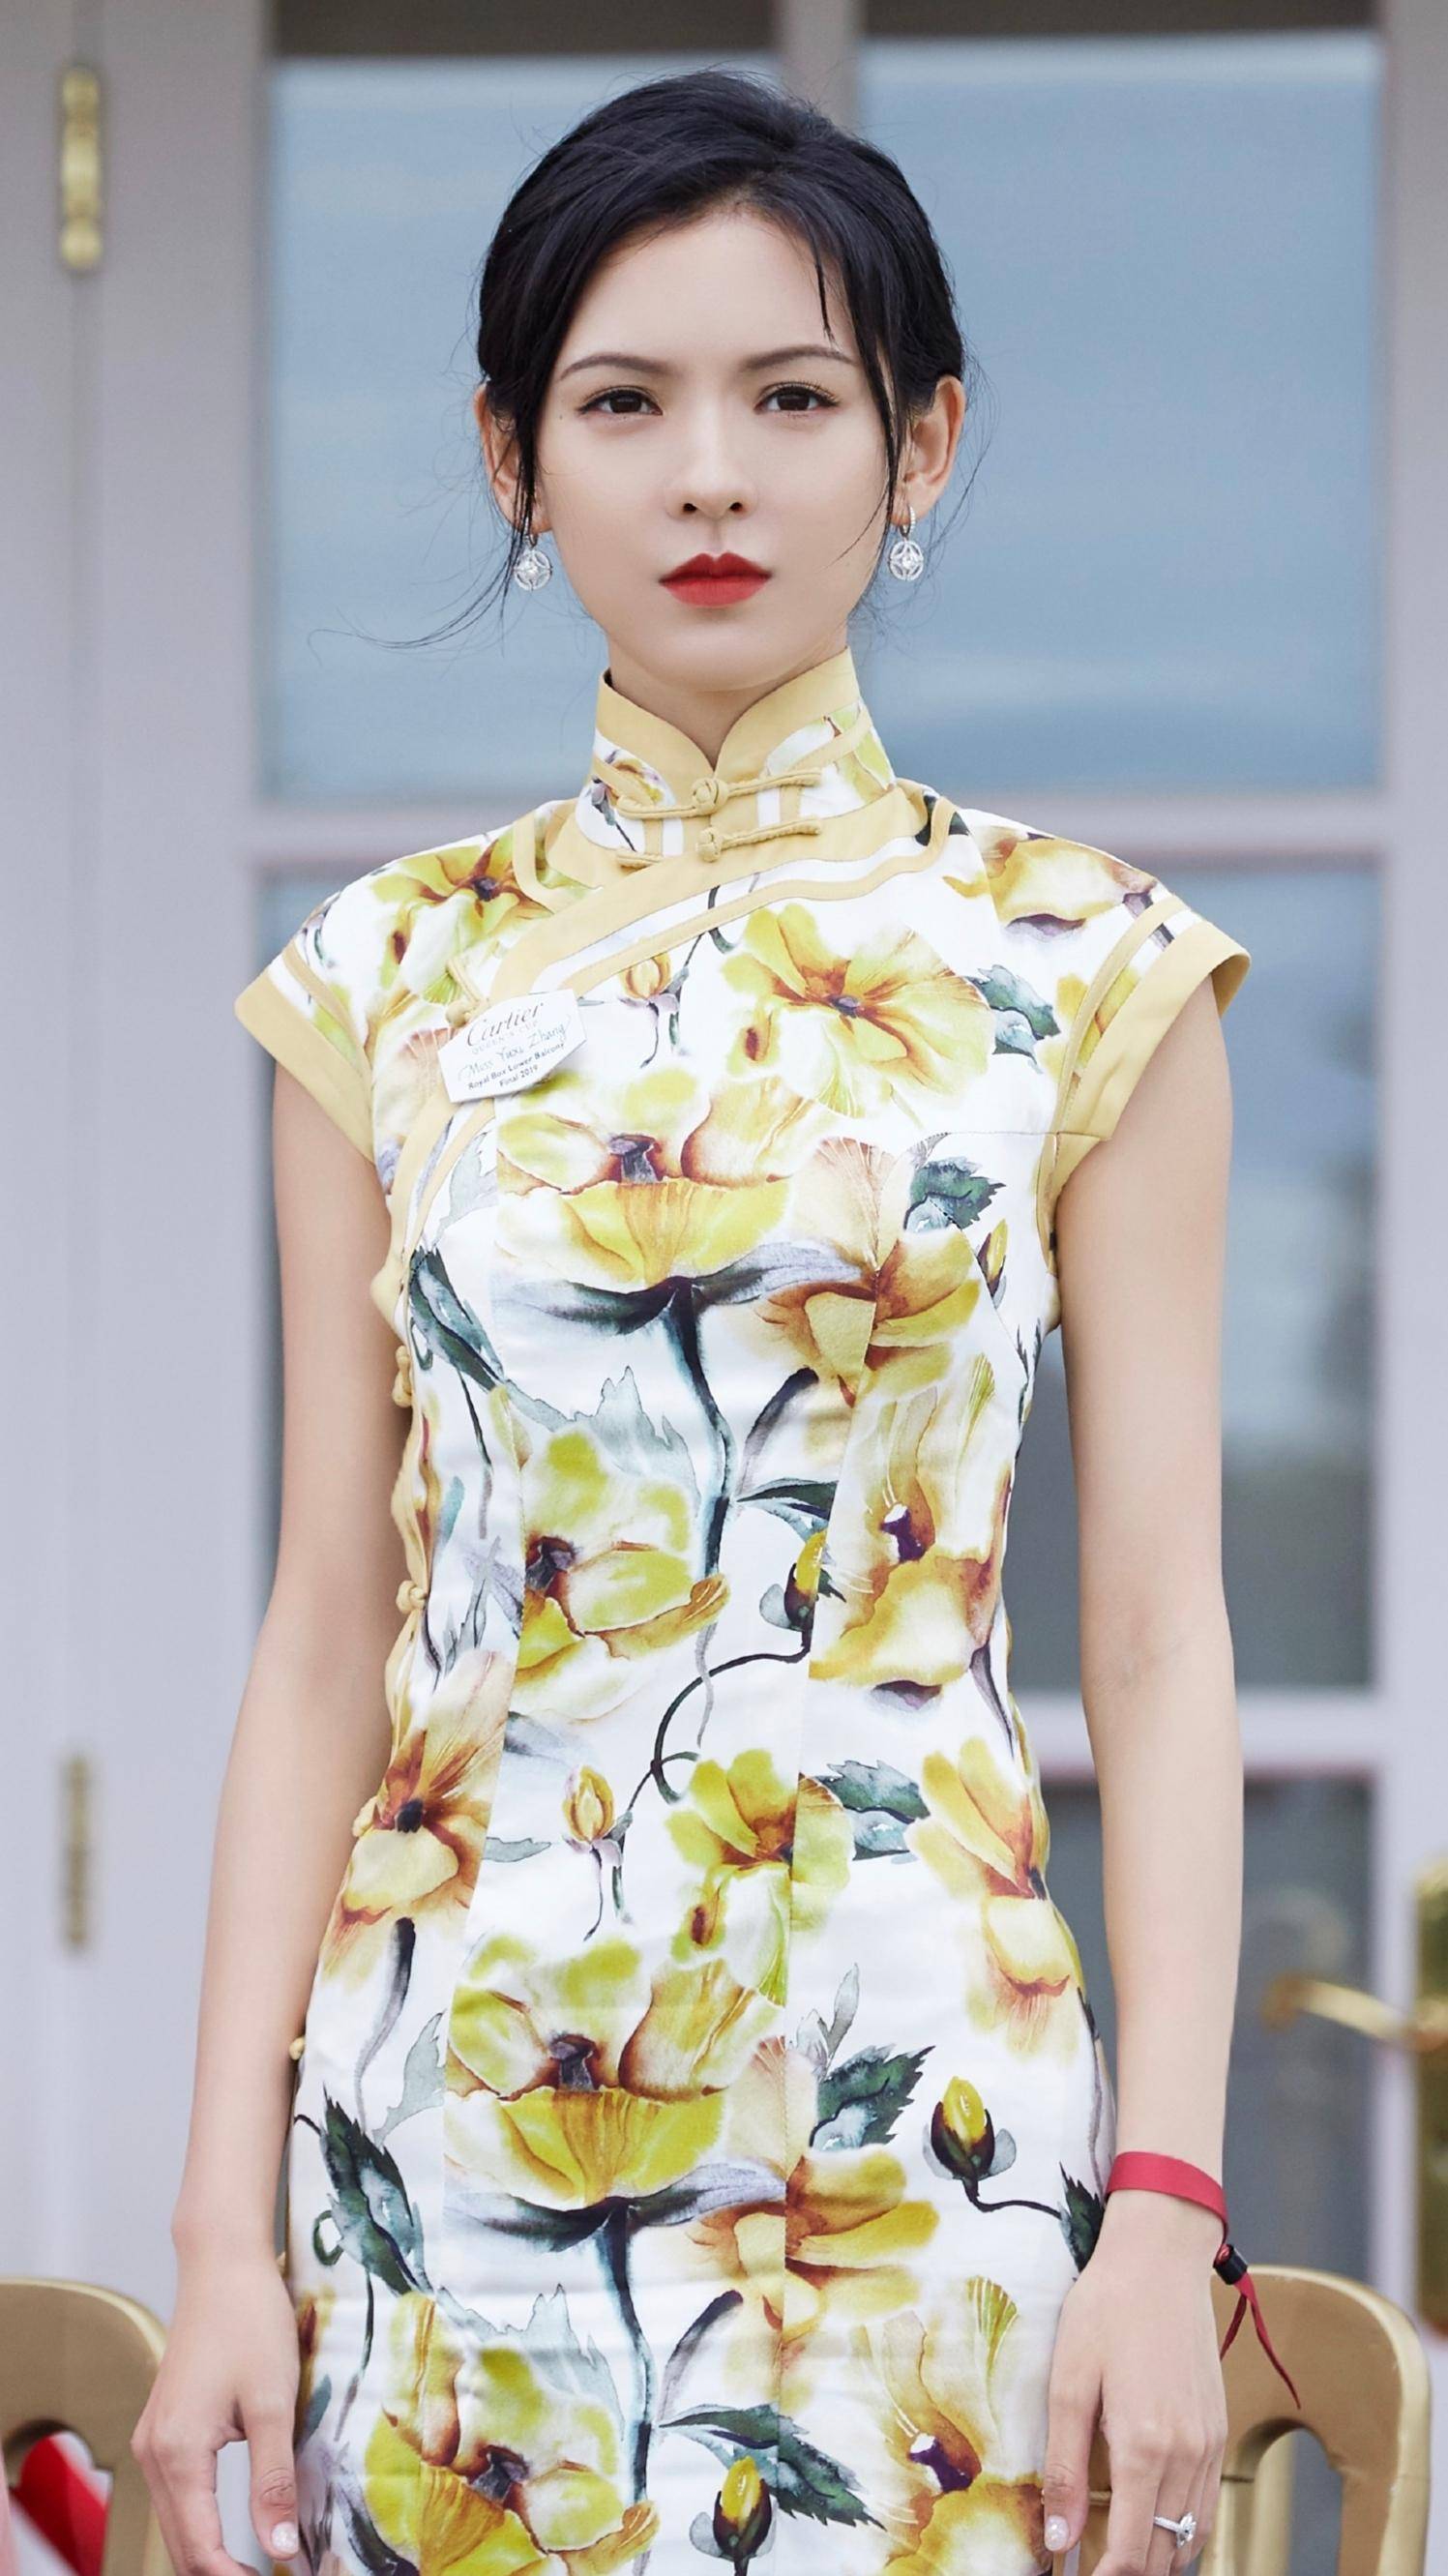 张予曦古典旗袍:东方女性的特色美,气质简直无敌